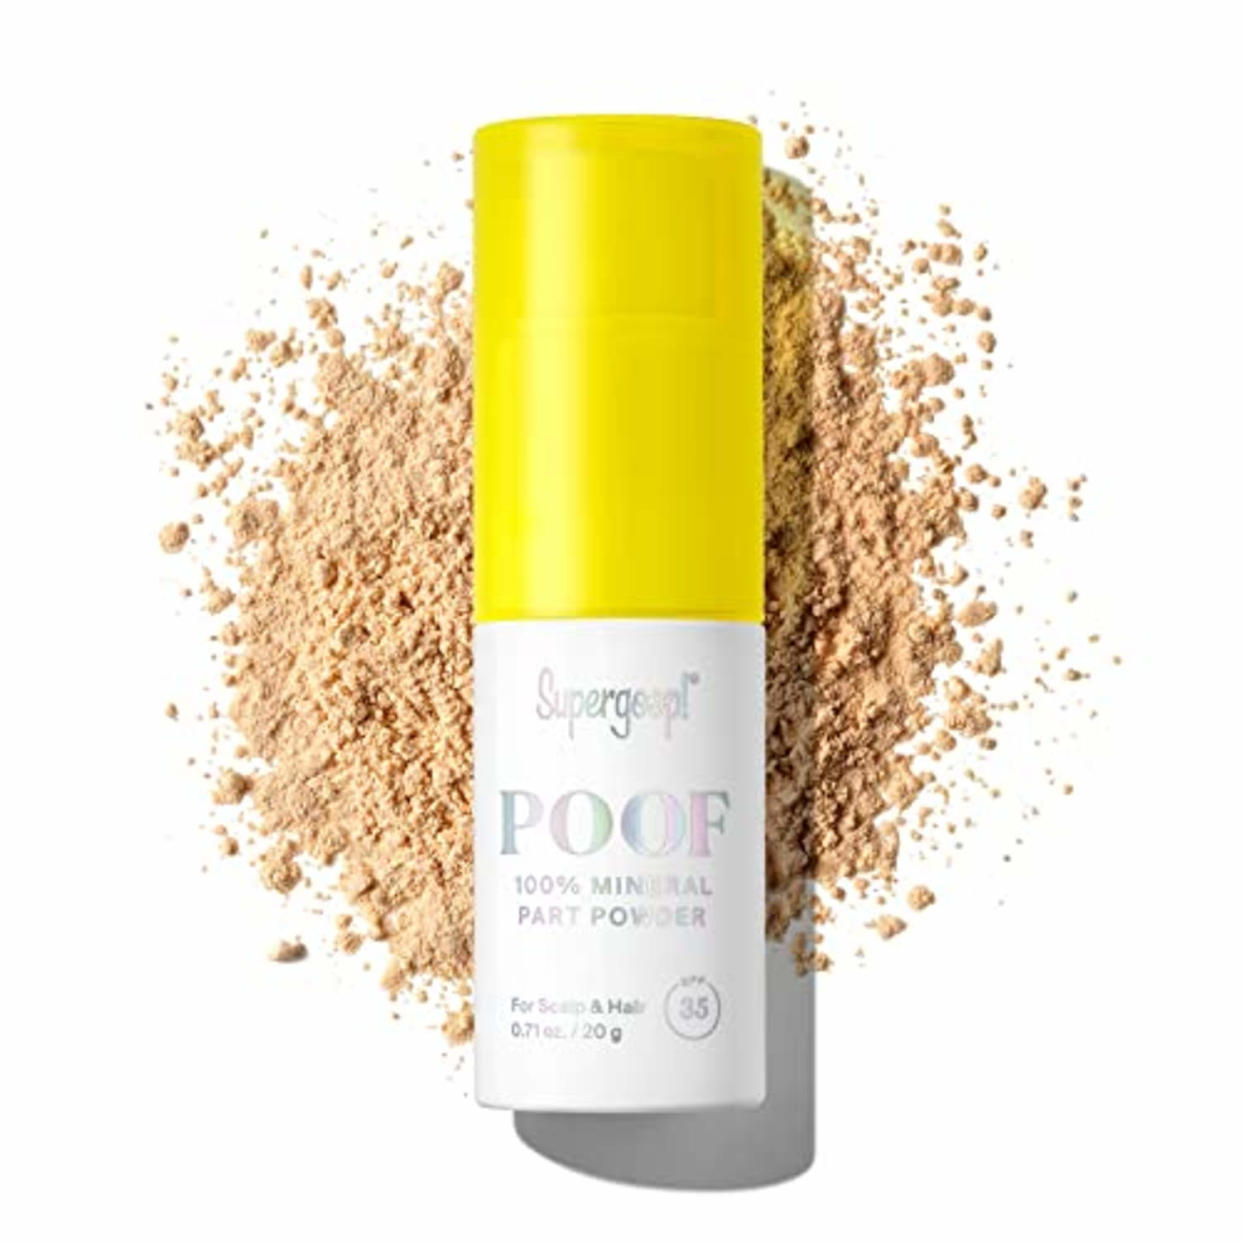 Supergoop Poof Part Powder (Amazon / Amazon)